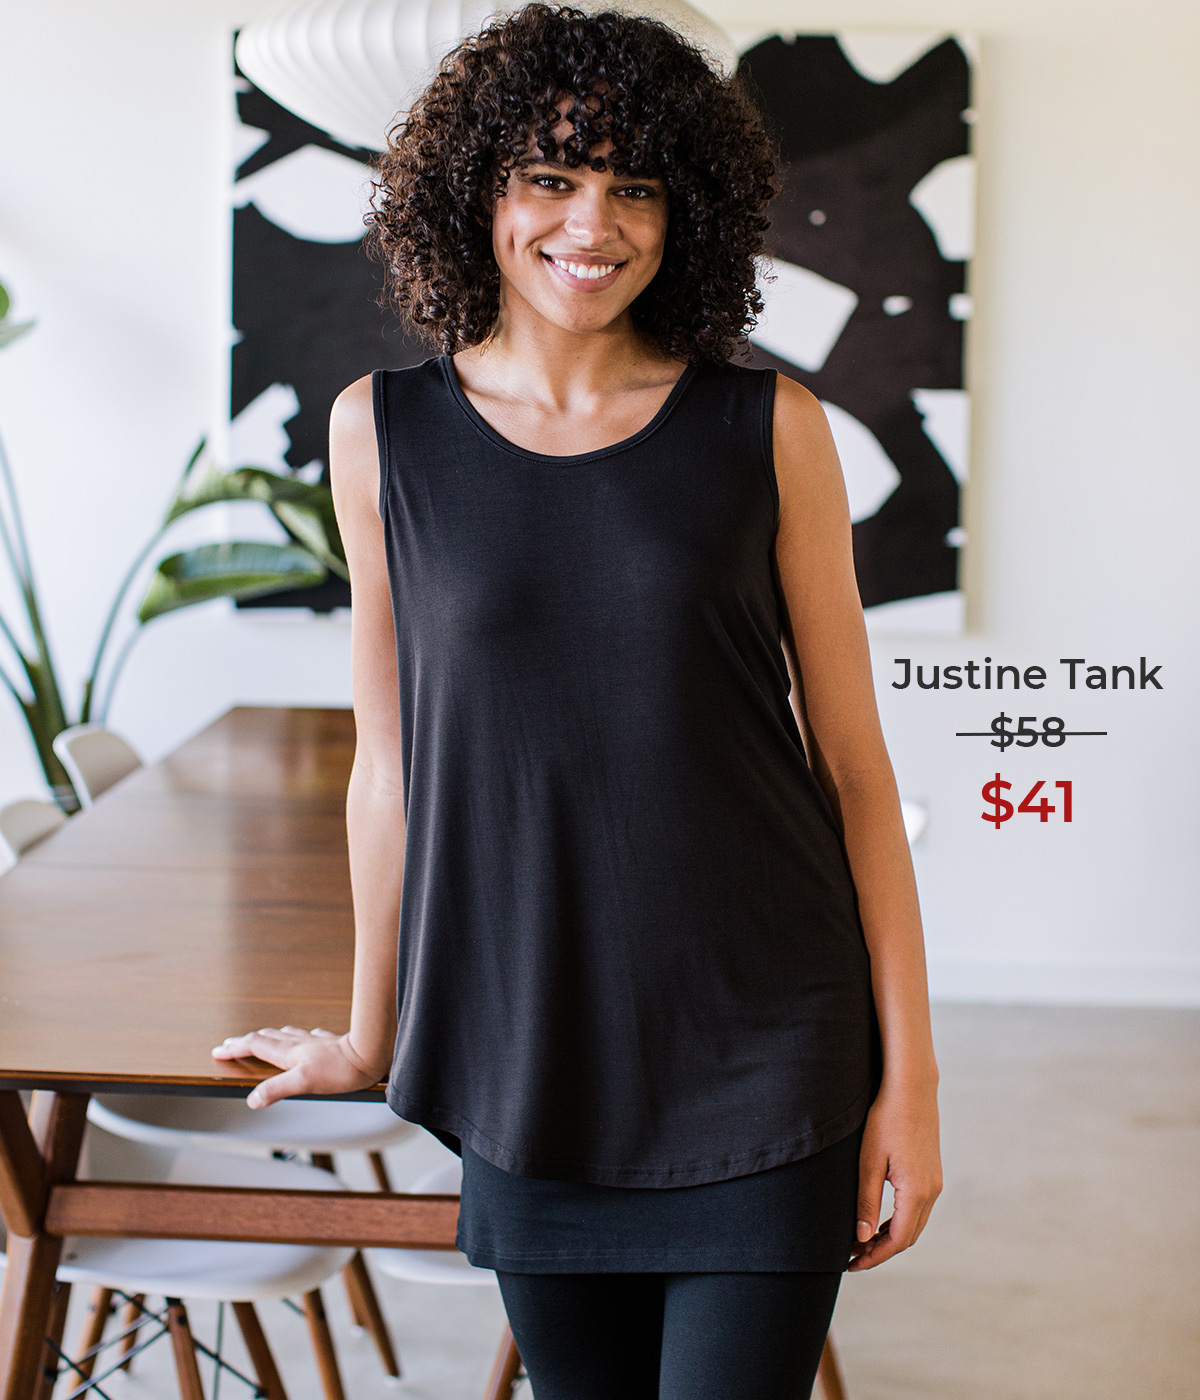 Justine Tank just $41